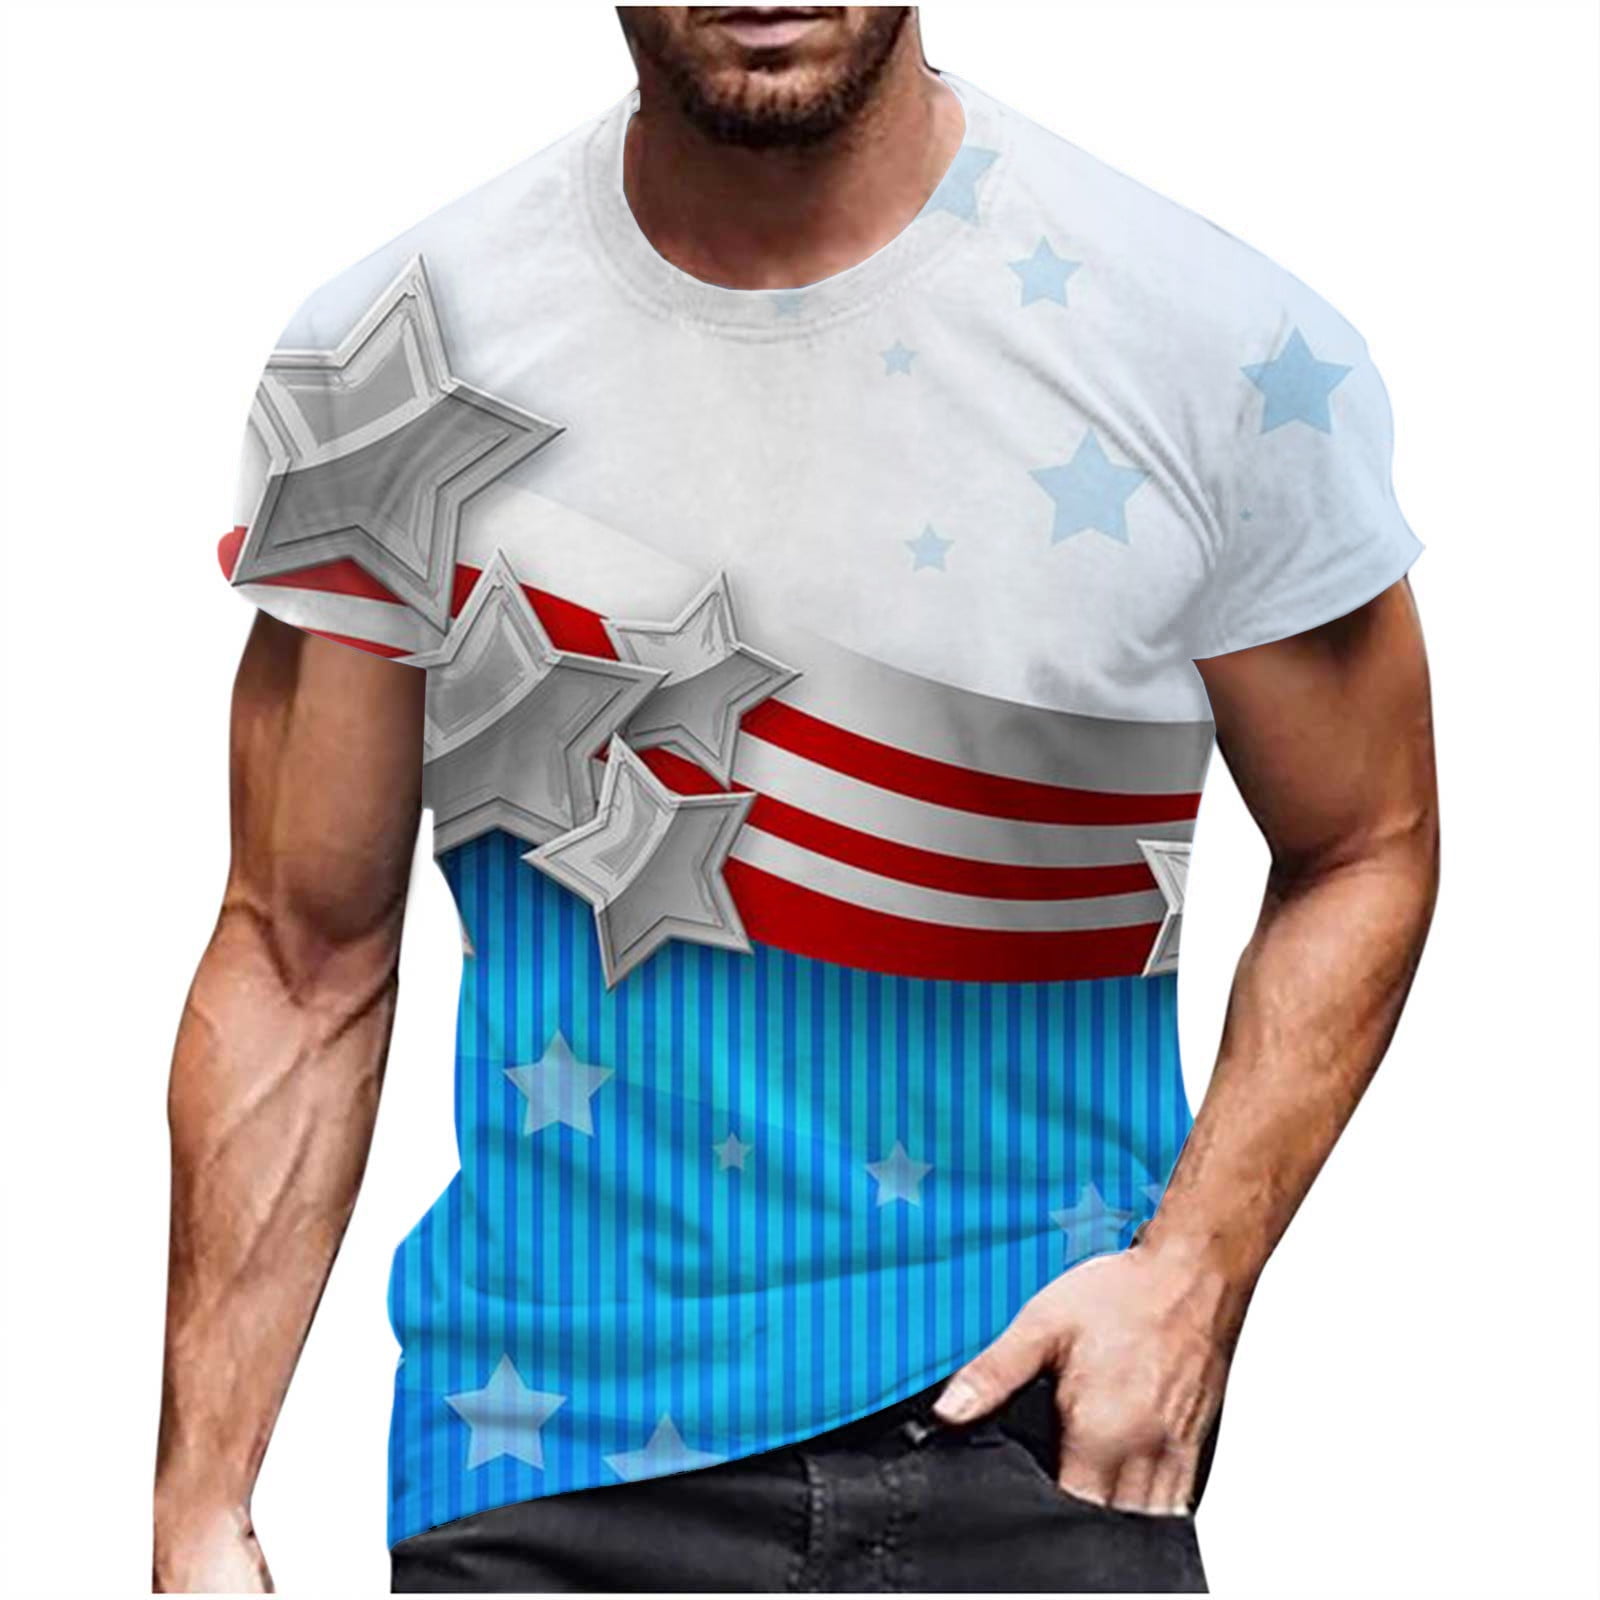 DDAPJ pyju Patriotic Shirts for Men Memorial Day Stars Stripes